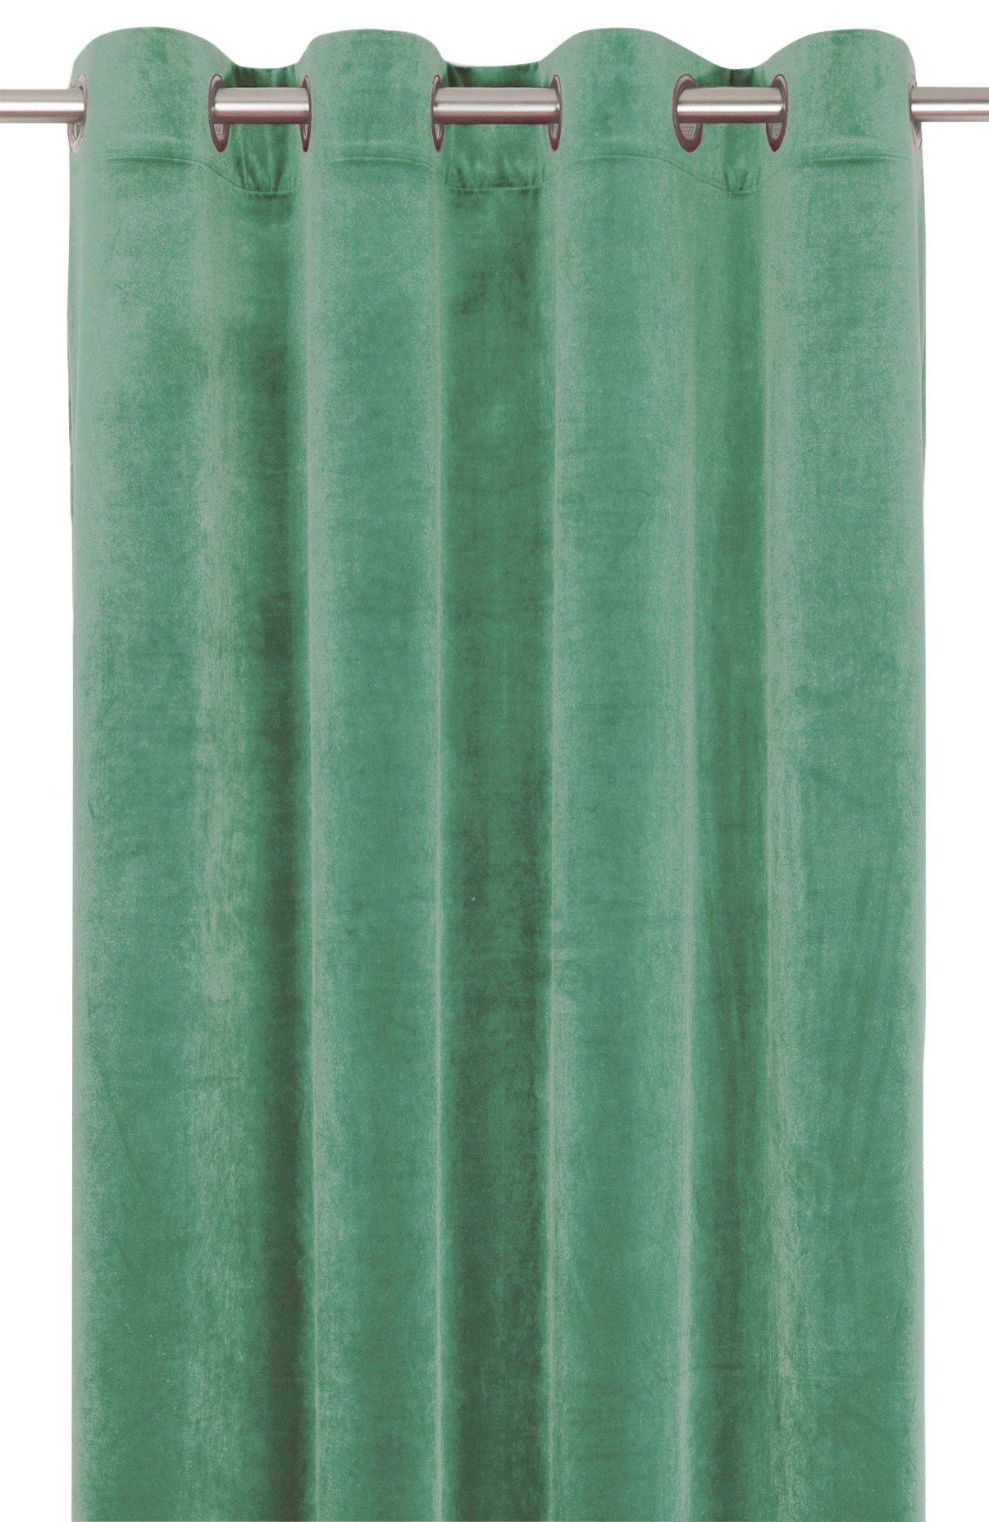 Elise ett ljusgrönt gardinset i sammet med öljetter från Svanefors.